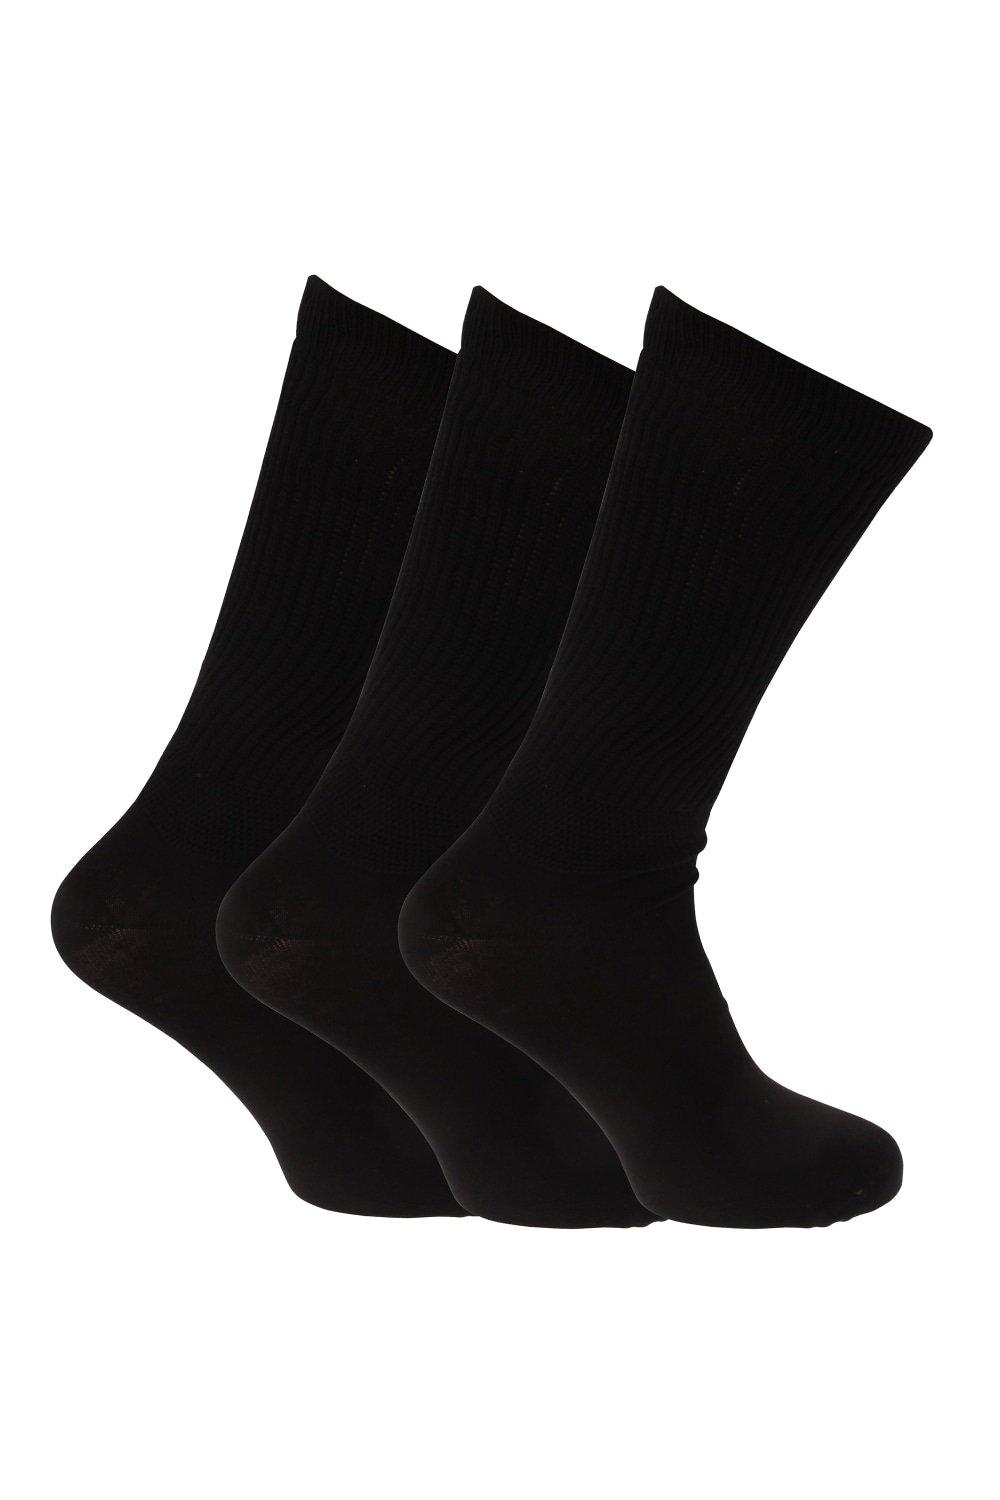 Big Foot Comfort Fit Diabetic Socks (3 Pairs)